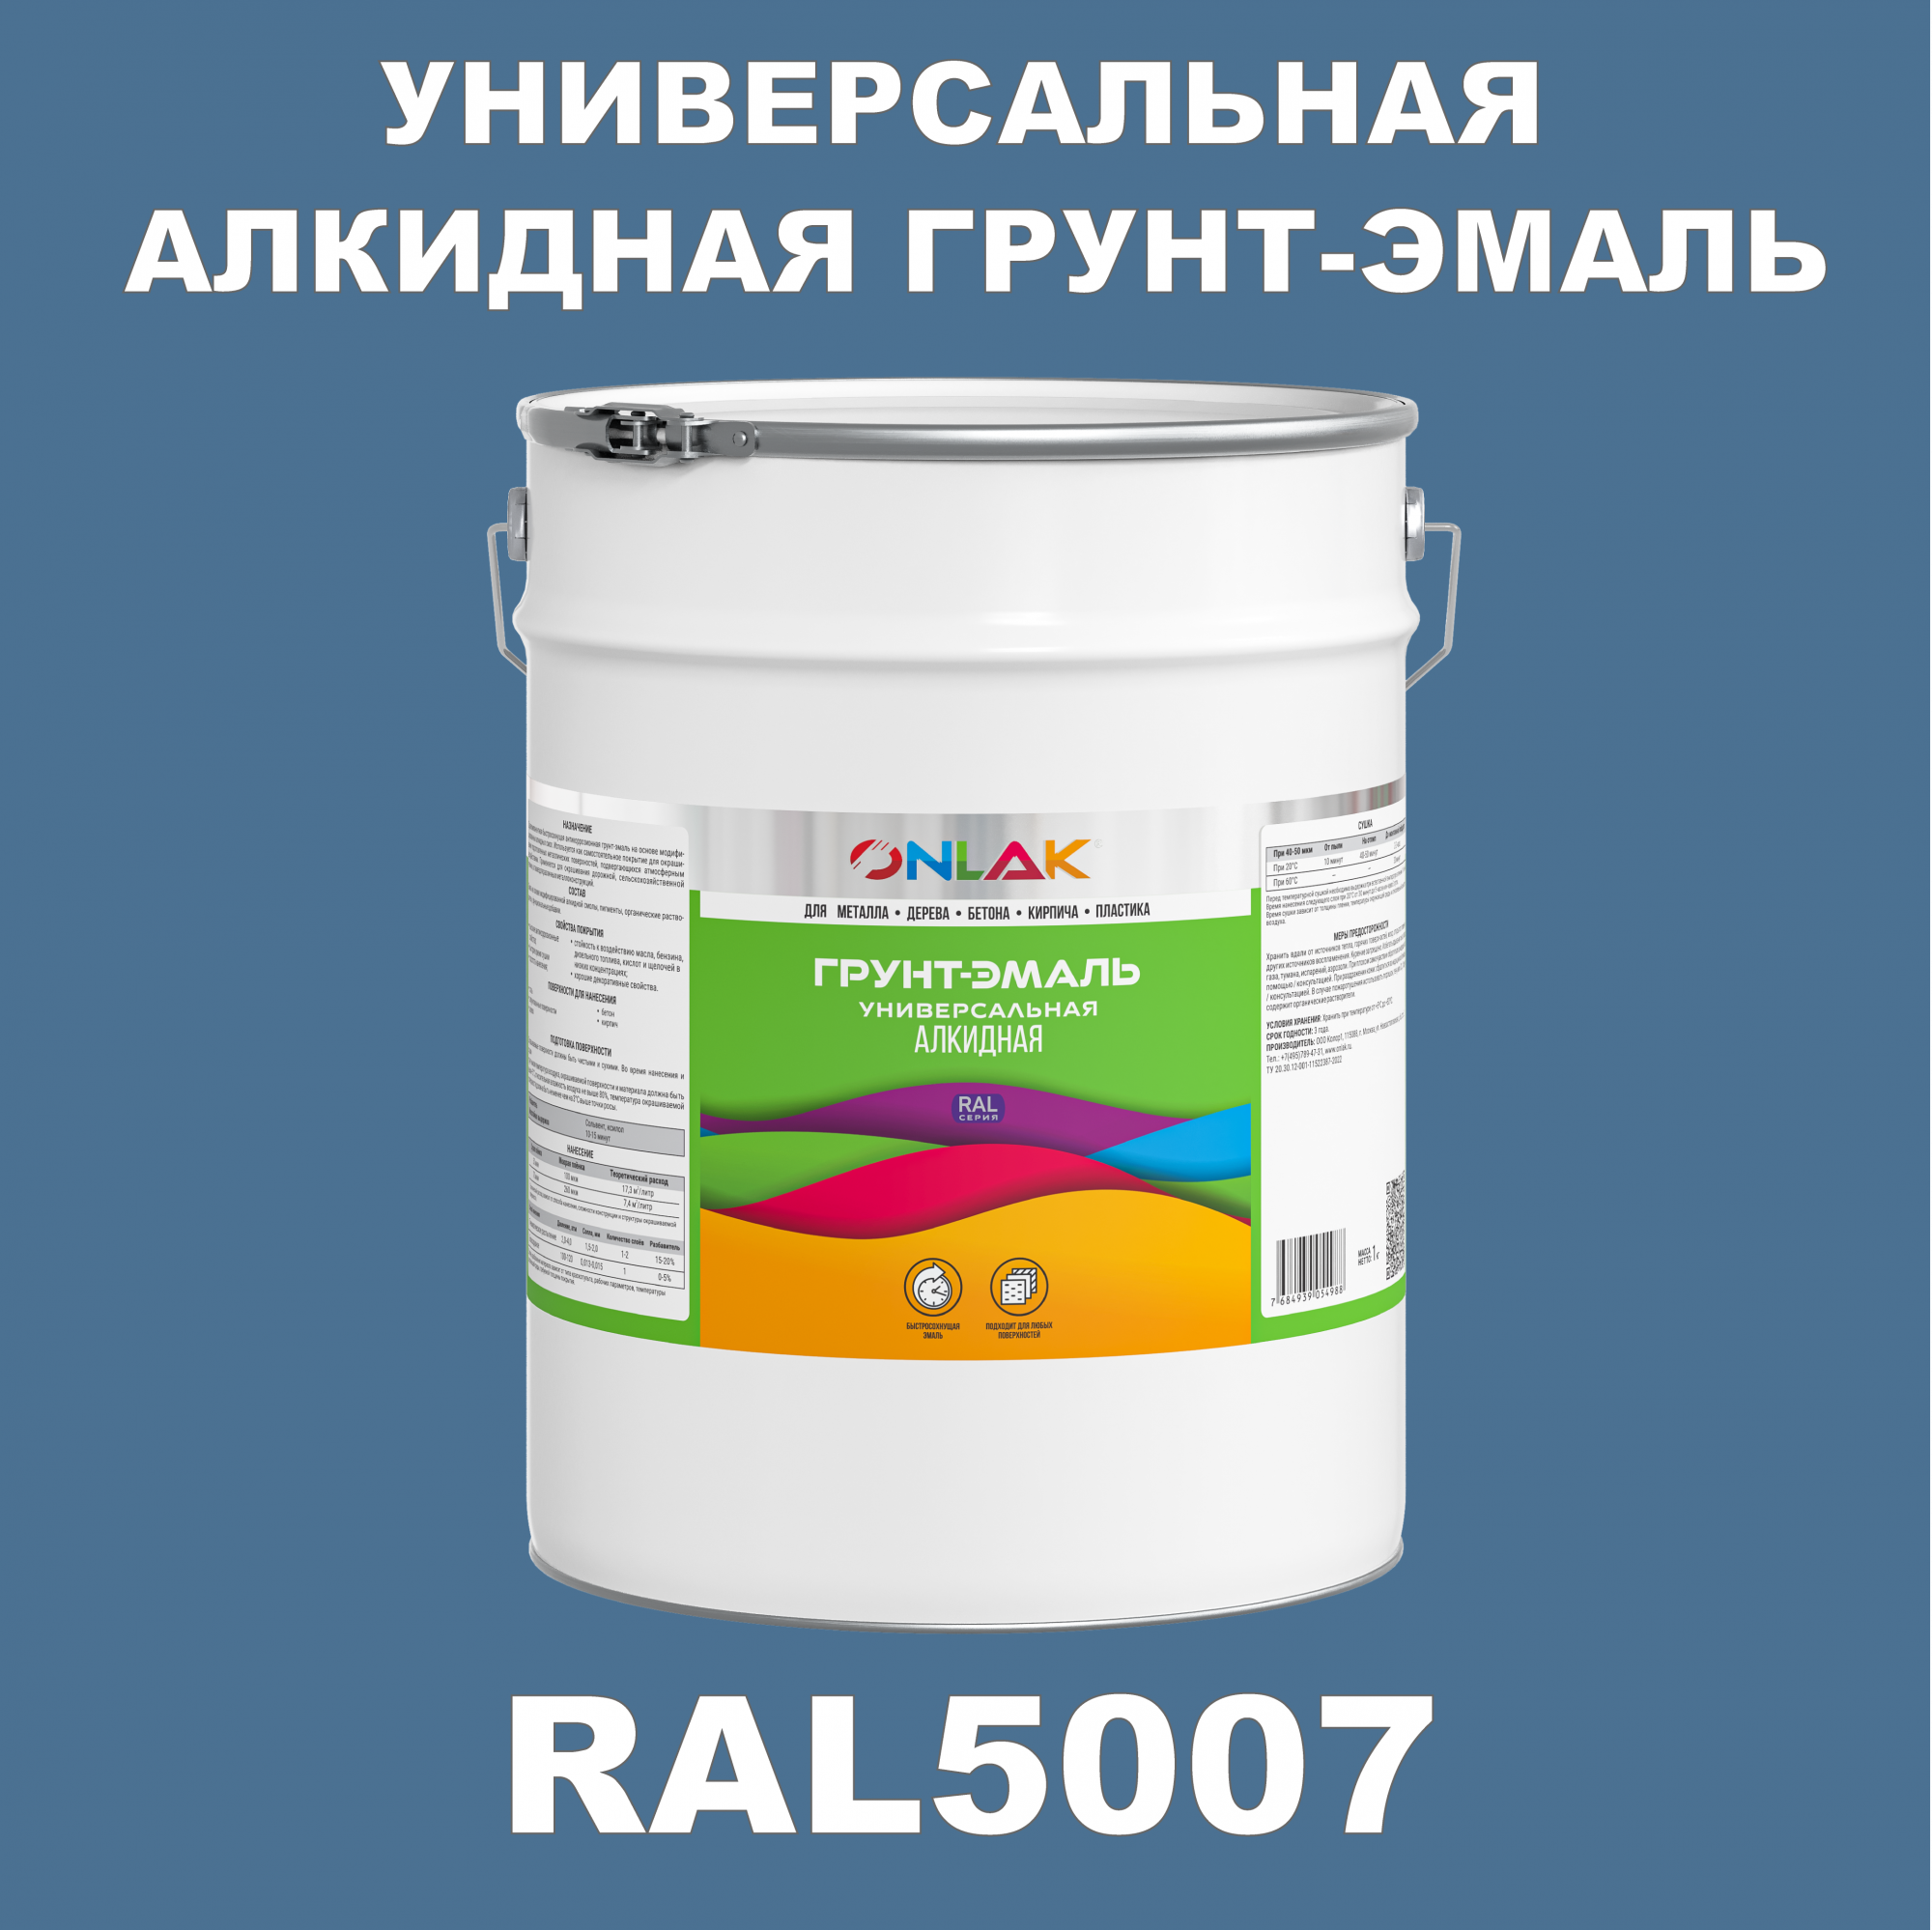 Грунт-эмаль ONLAK 1К RAL5007 антикоррозионная алкидная по металлу по ржавчине 20 кг грунт эмаль neomid по ржавчине быстросохнущая алкидная серая 0 9 кг